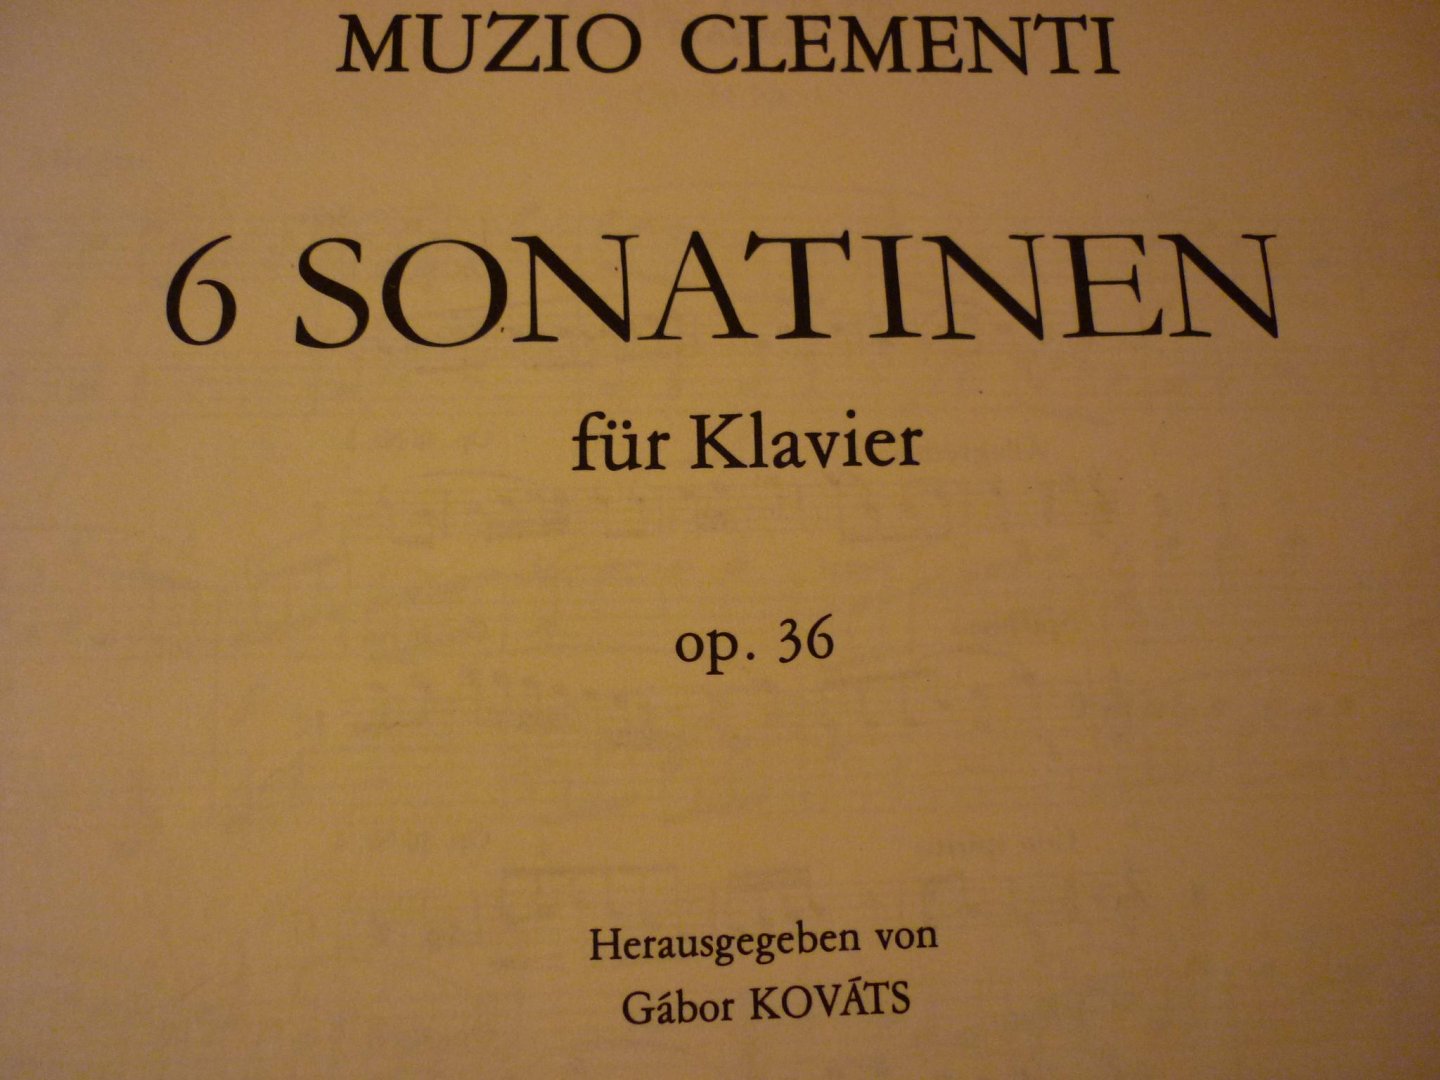 Clementi; Muzio (1752 - 1832) - Sonatinen 1-6 fur Klavier; Op 36 (herausgegeben von Gábor Kováts)